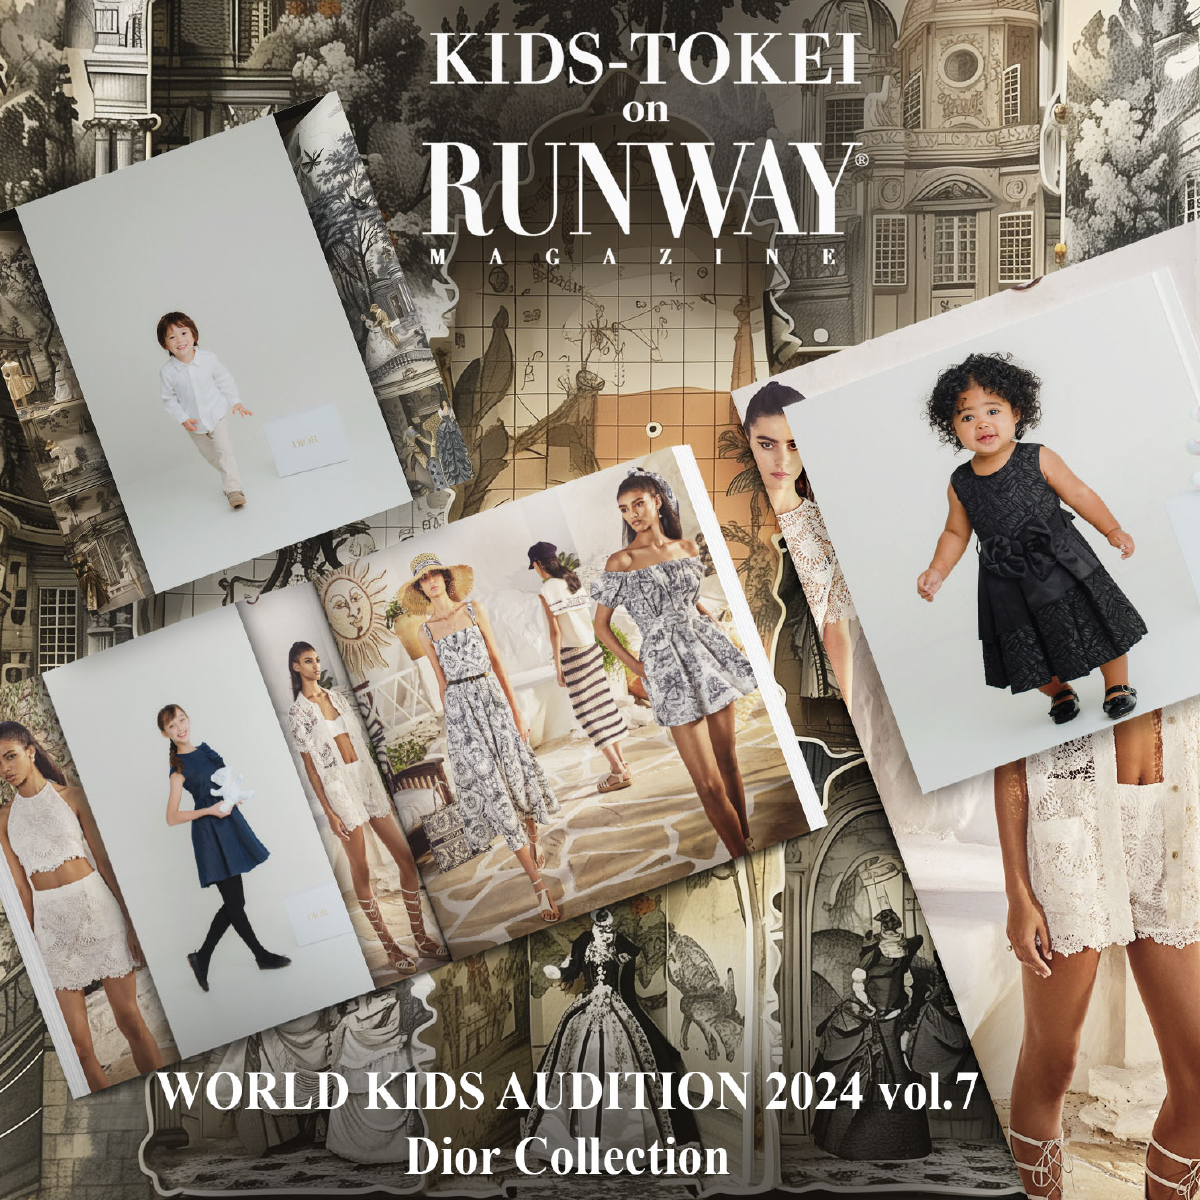 KIDS-TOKEI on RUNWAY MAGAZINE ® WORLD KIDS AUDITION 2024 vol.7 Dior Collection